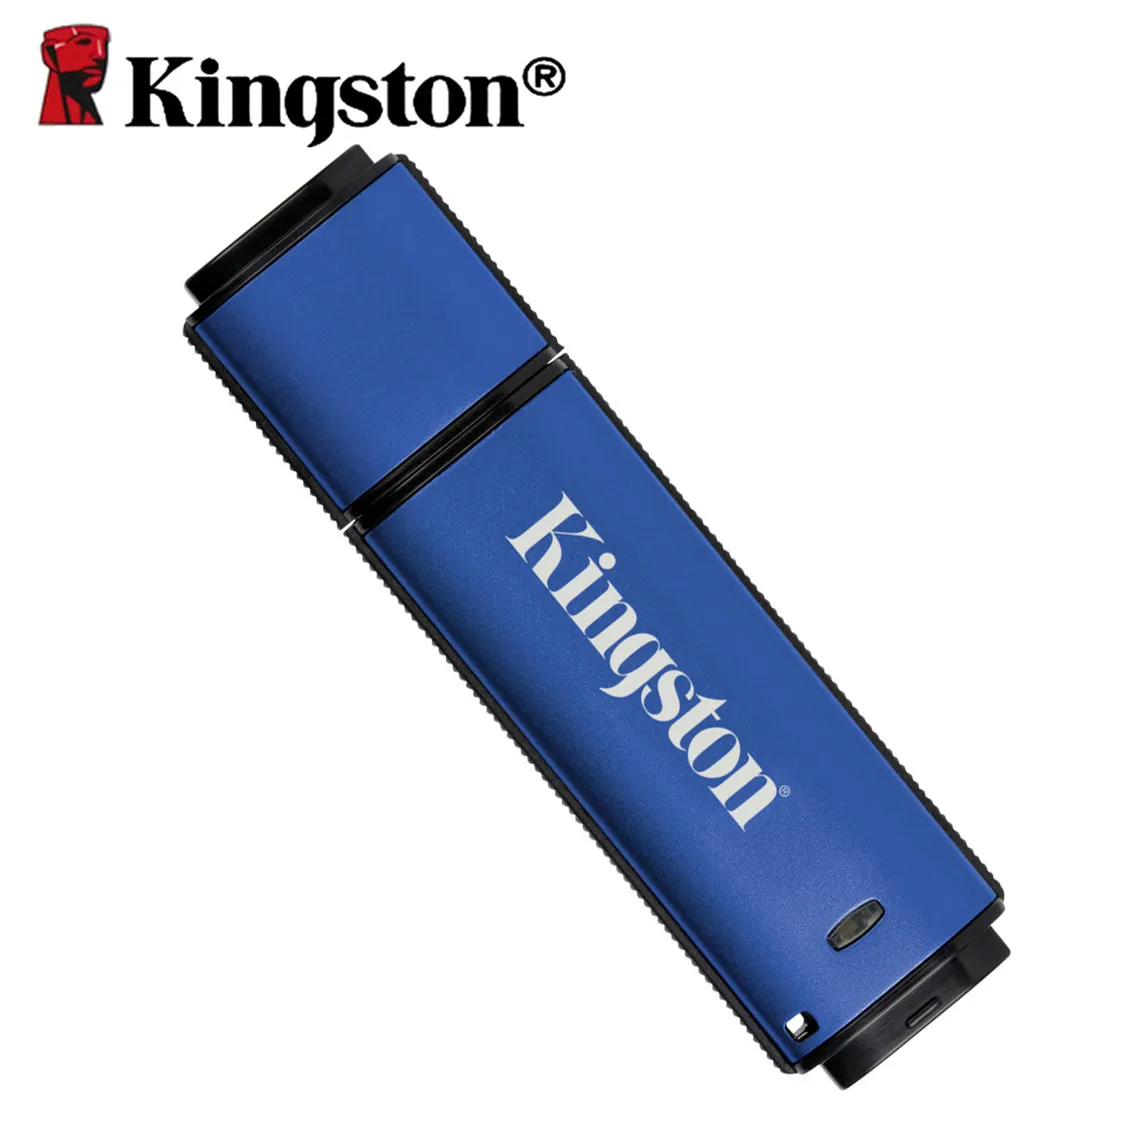 kingston-usb-flash-drive-64gb-pendrive-16gb-32bg-8gb-usb30-ad-alta-velocita-del-usb-del-bastone-di-classe-enterprise-crittografia-hardware-pendrive